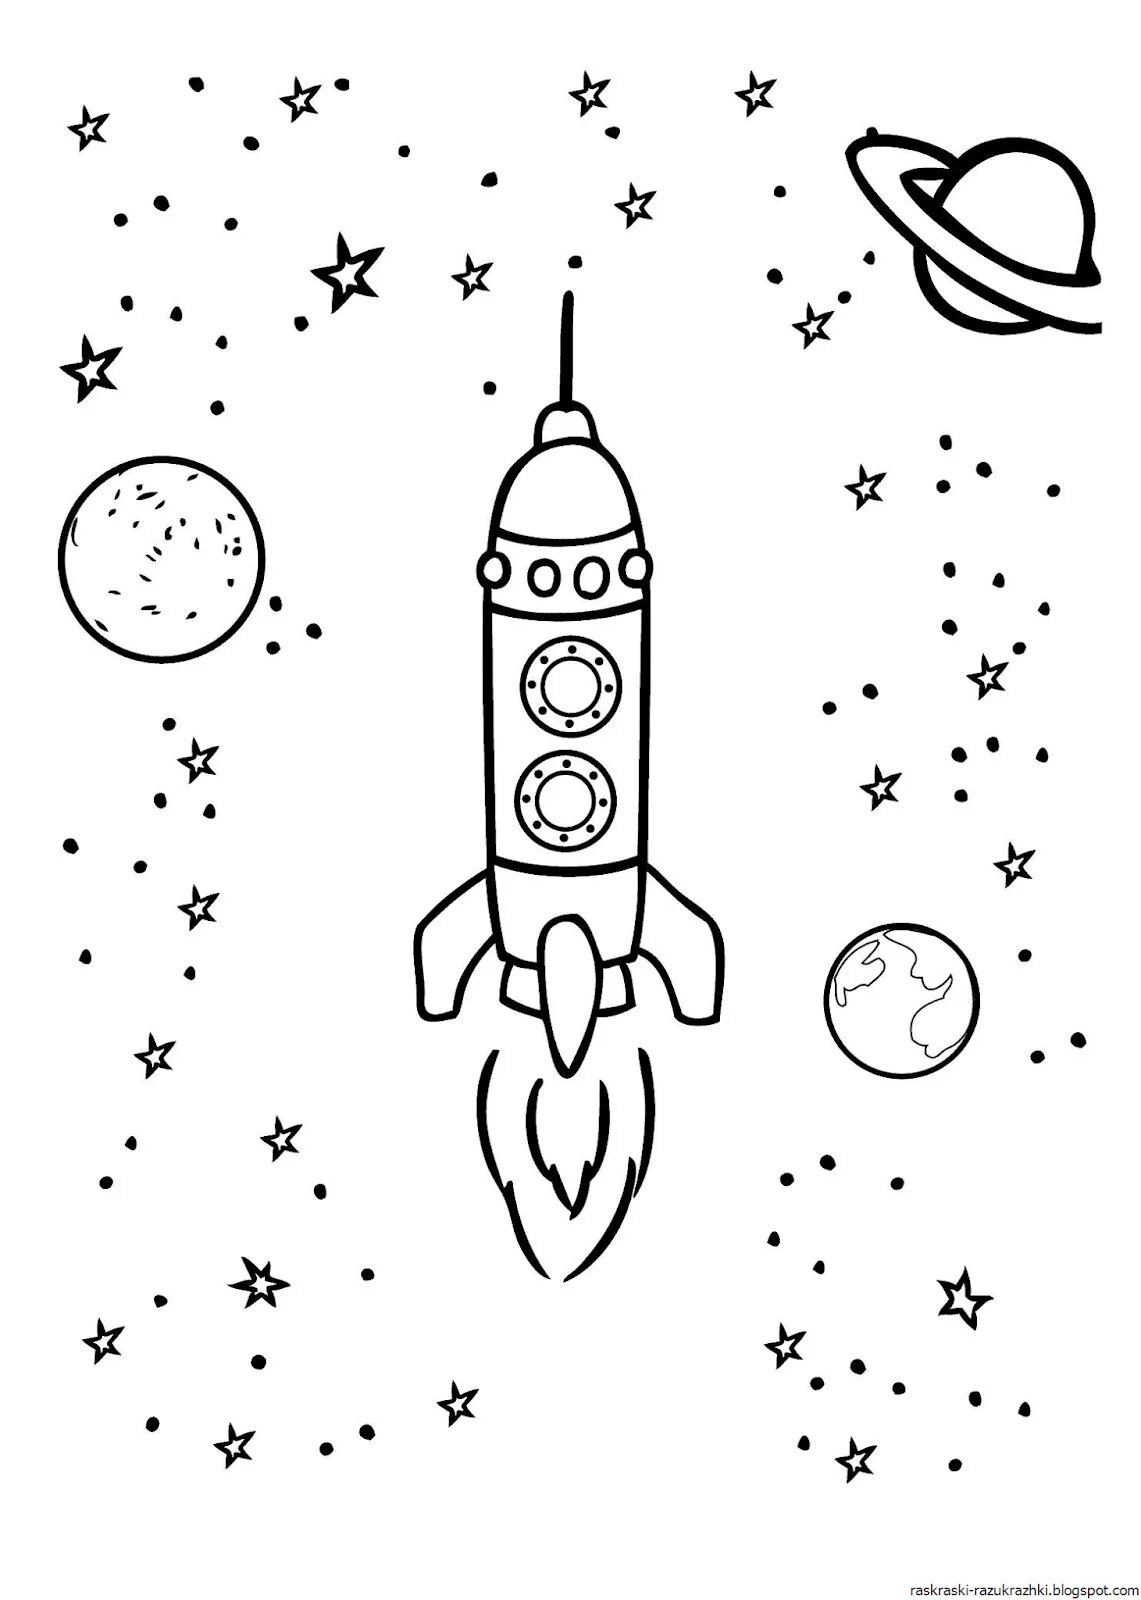 Ракета раскраска для детей 5 лет. Ракета раскраска. Ракета раскраска для детей. Космос раскраска для детей. Раскраска ракета в космосе.